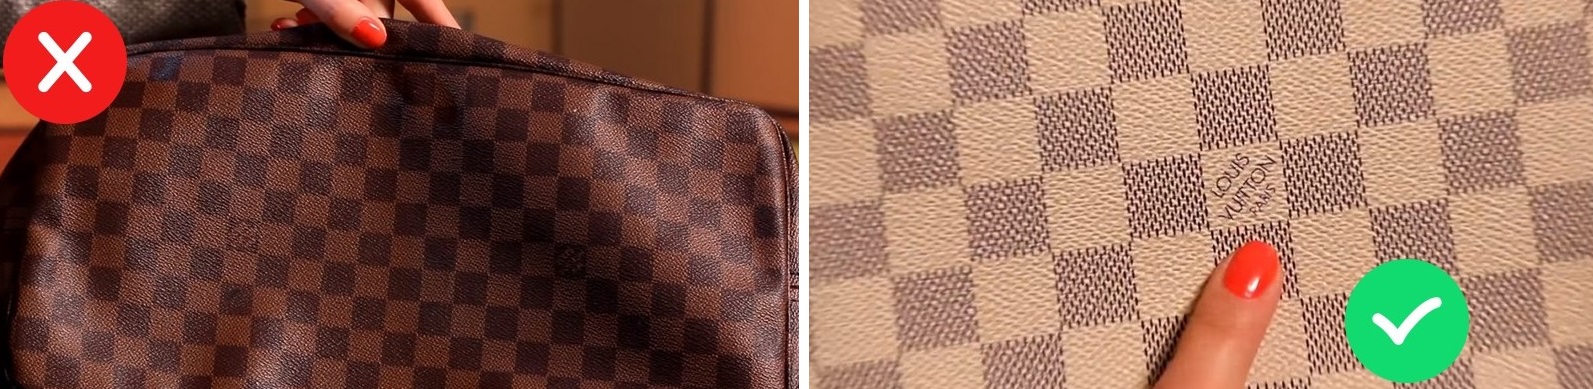 정품 Louis Vuitton 가방과 가짜 로고